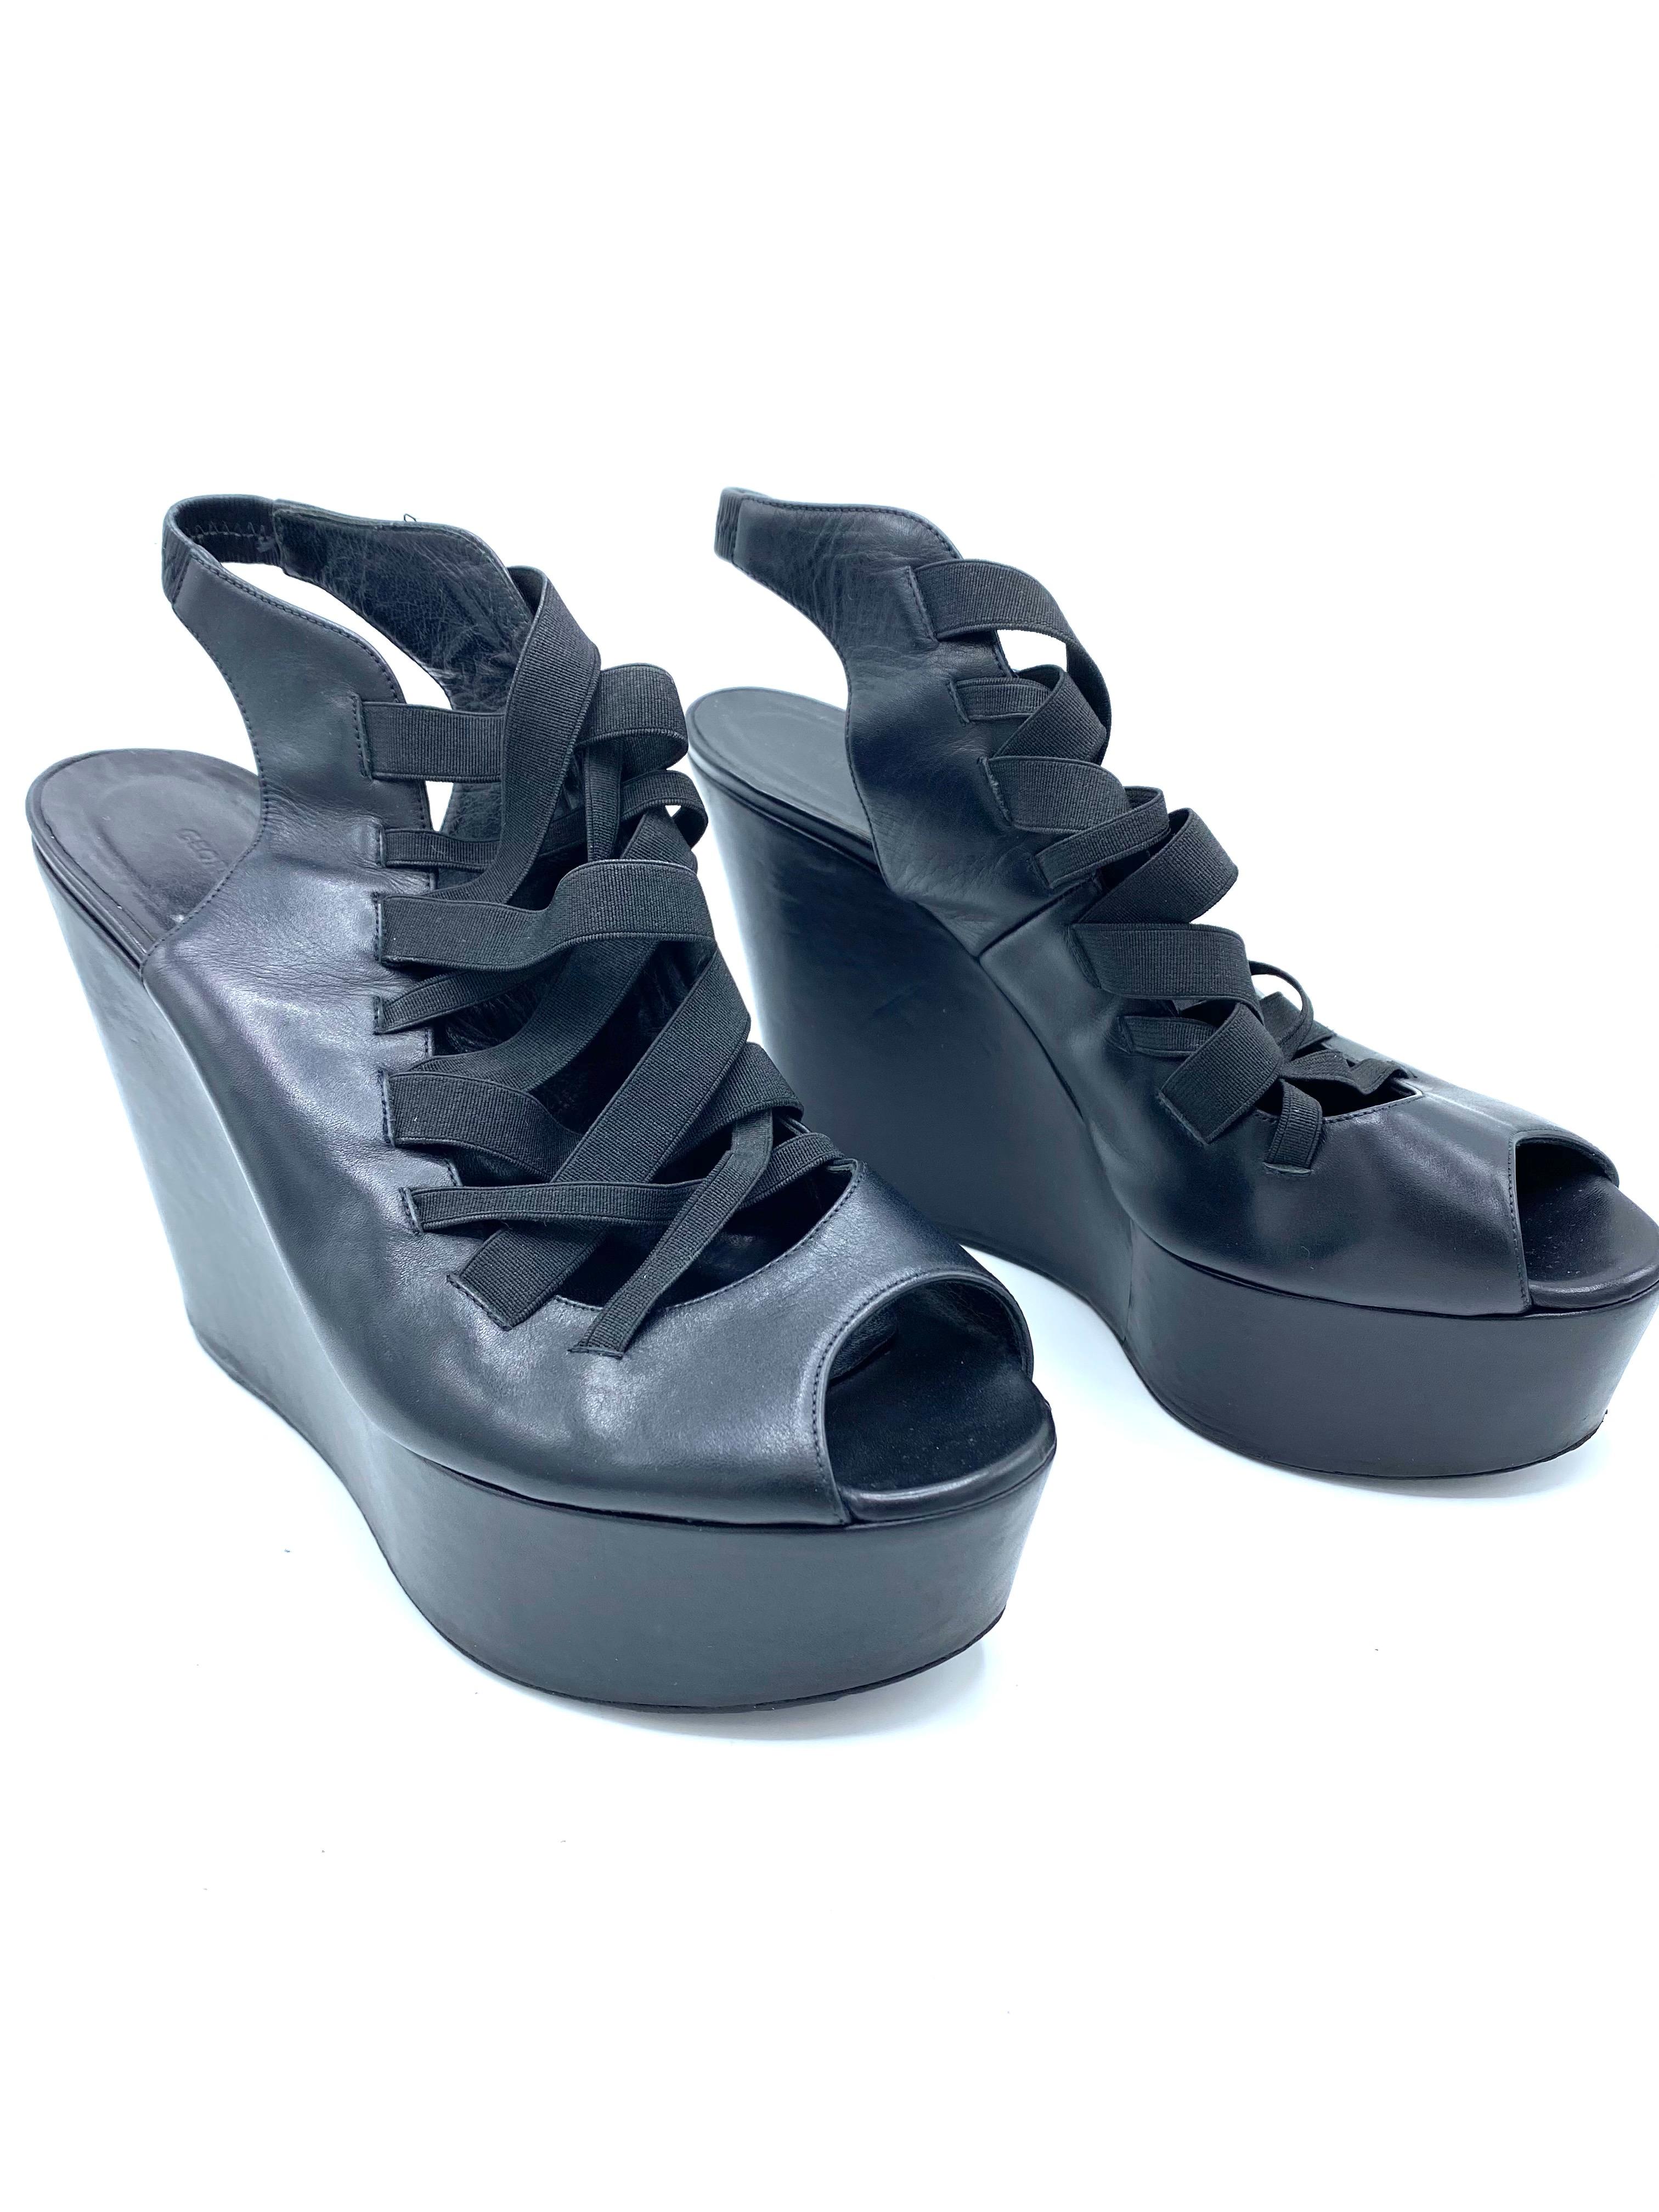 Détails du produit :

Les chaussures sont en cuir noir, le bout est ouvert et la plateforme mesure 5